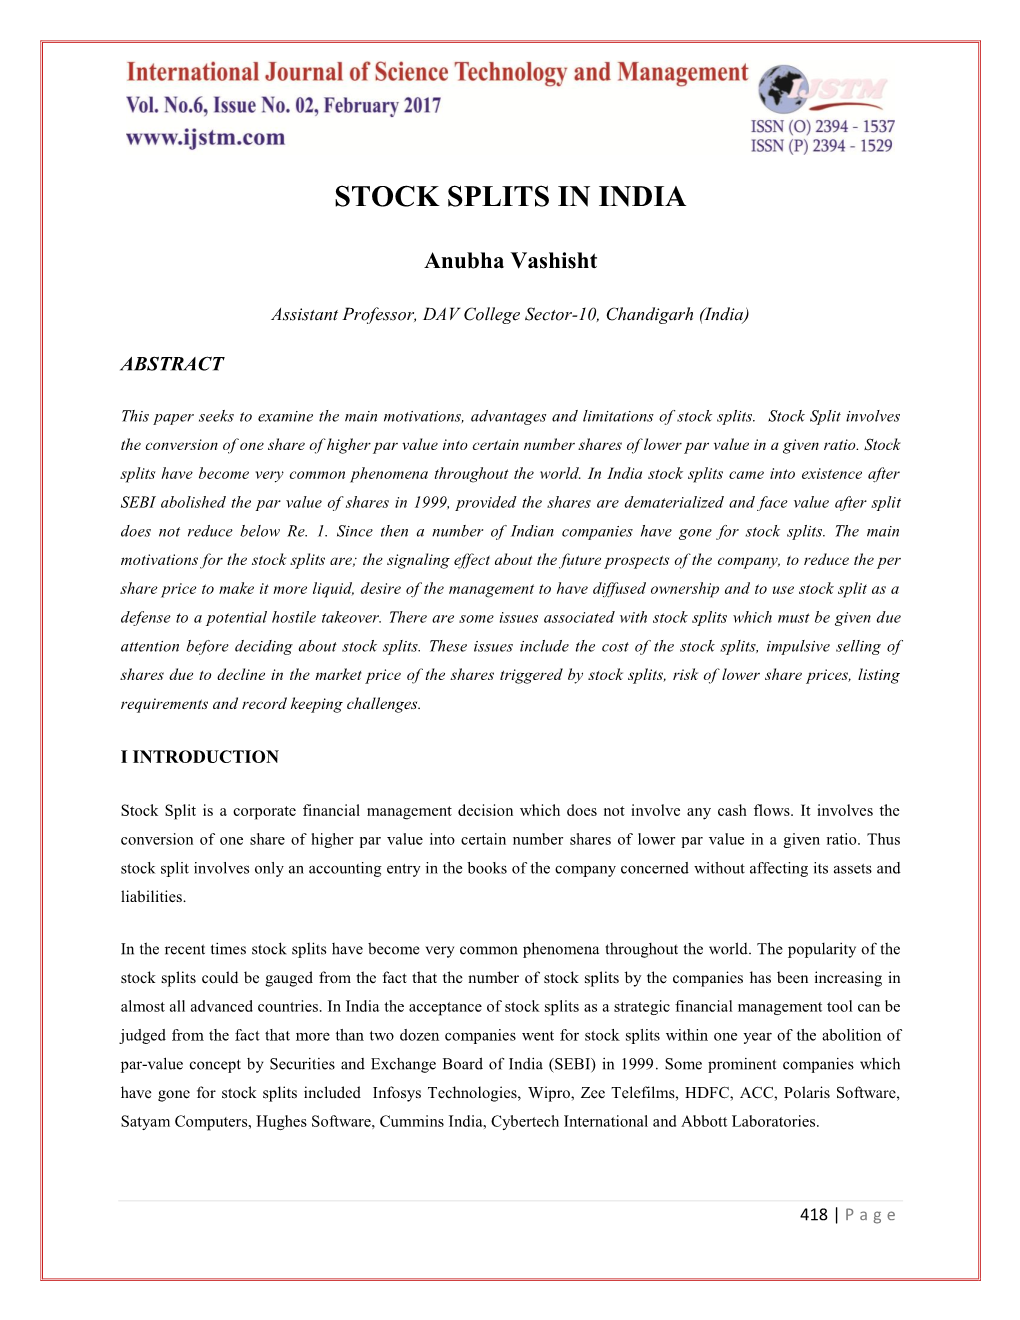 Stock Splits in India